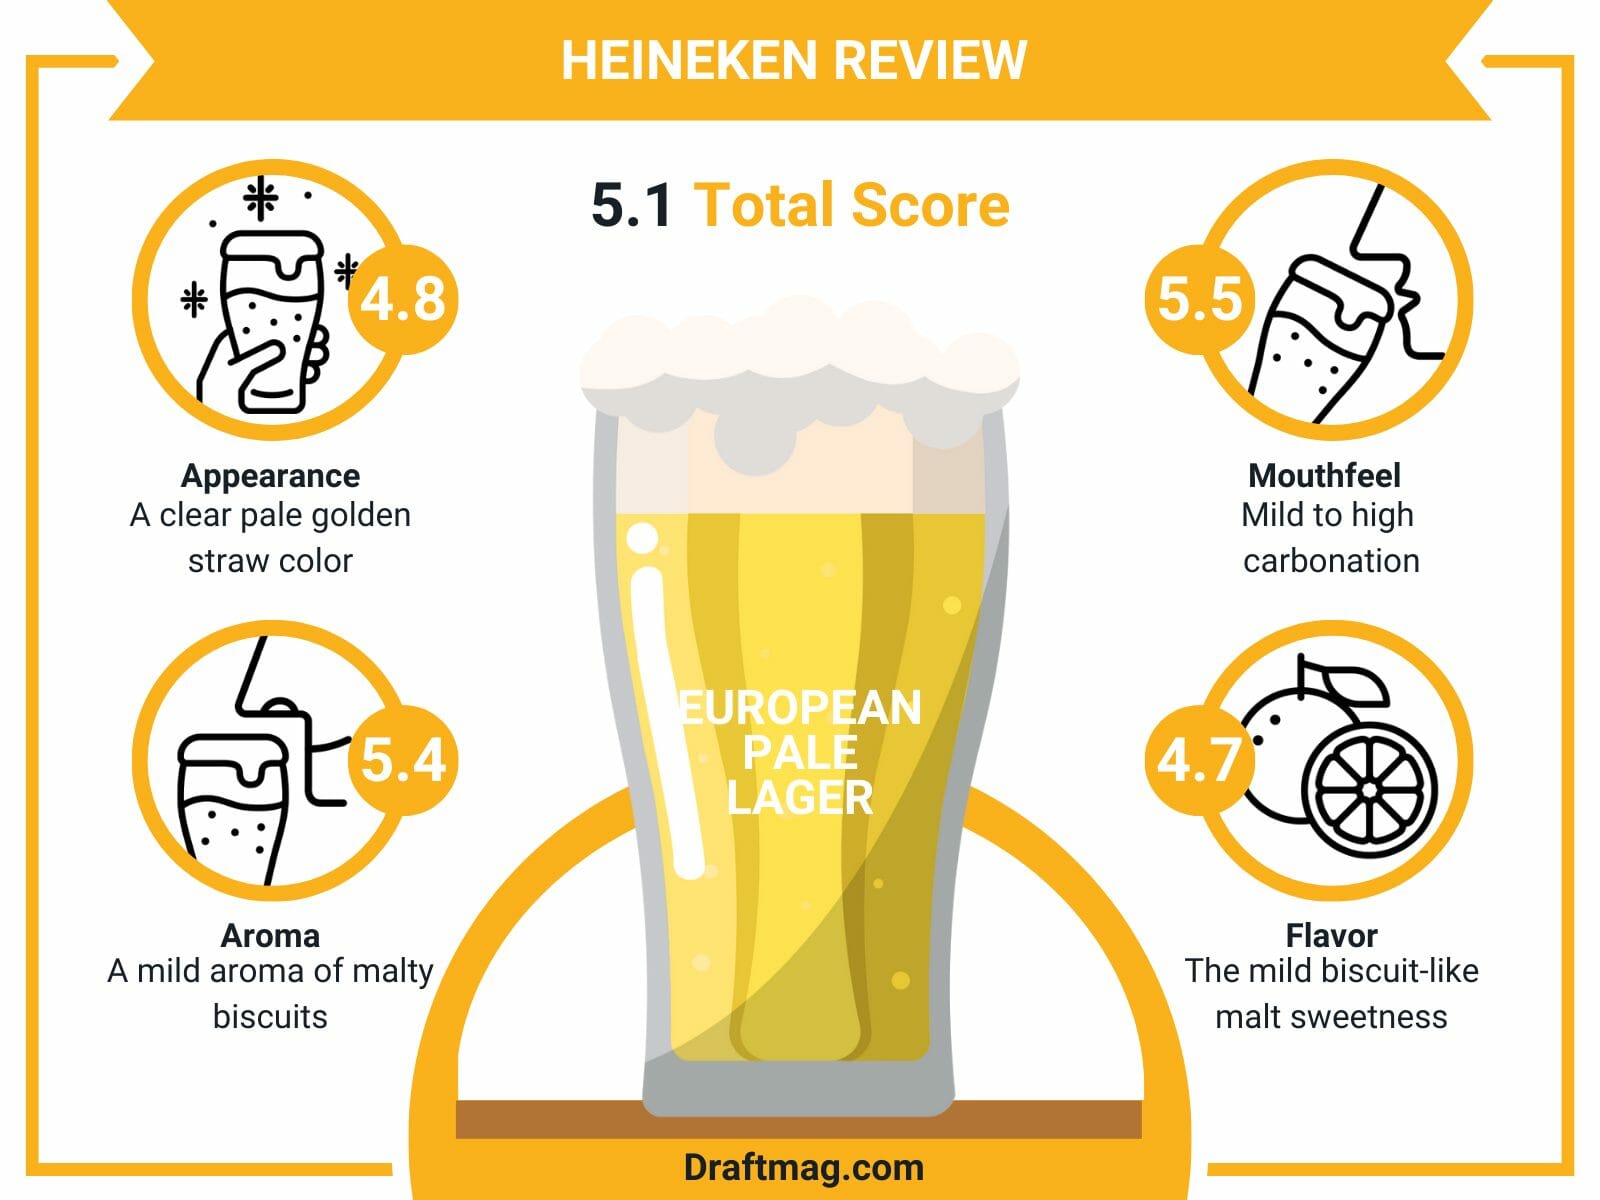 Heineken review infographic